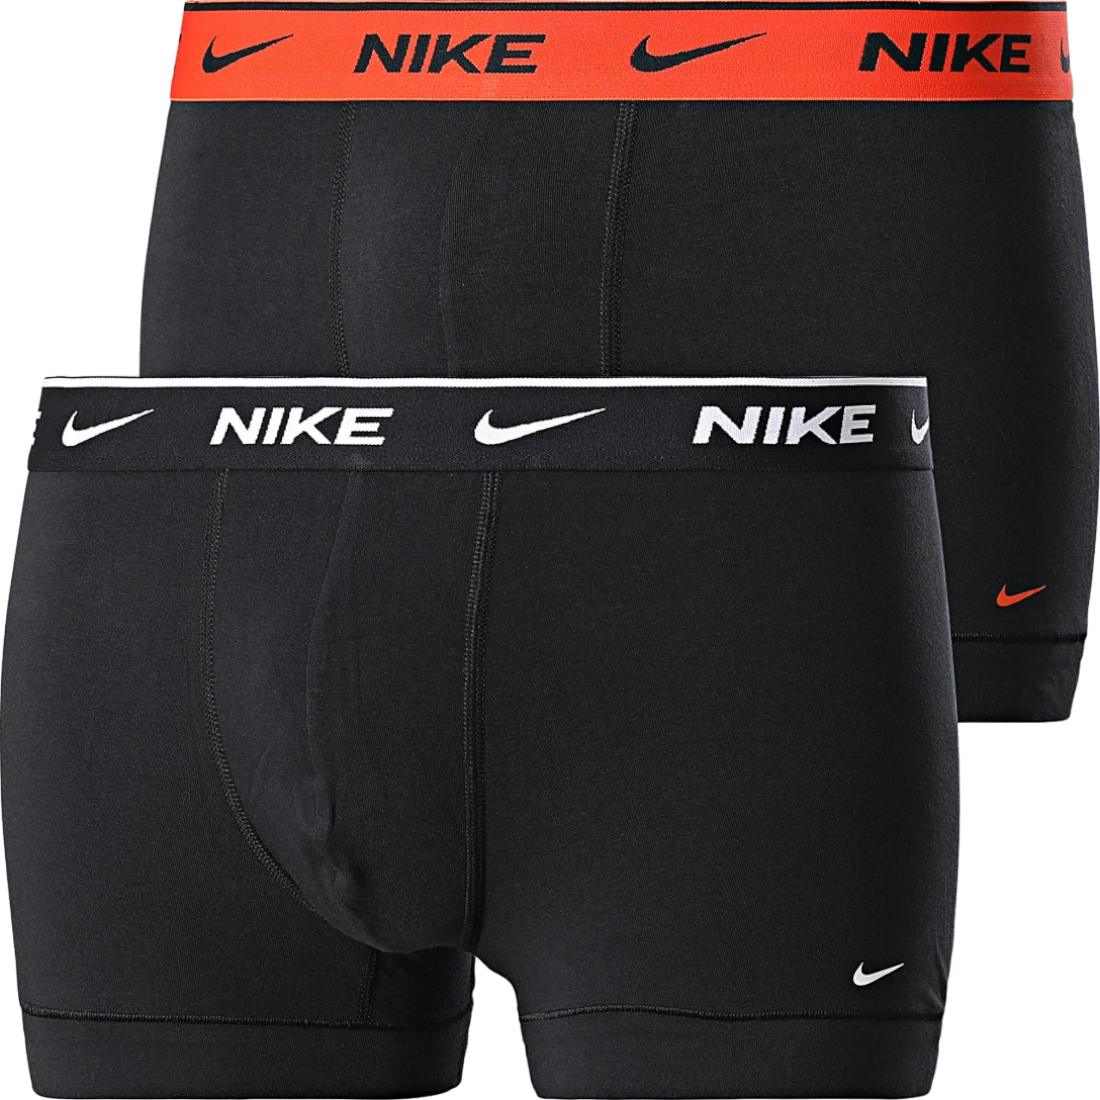 Boxershorts Nike Cotton Trunk 2 pcs